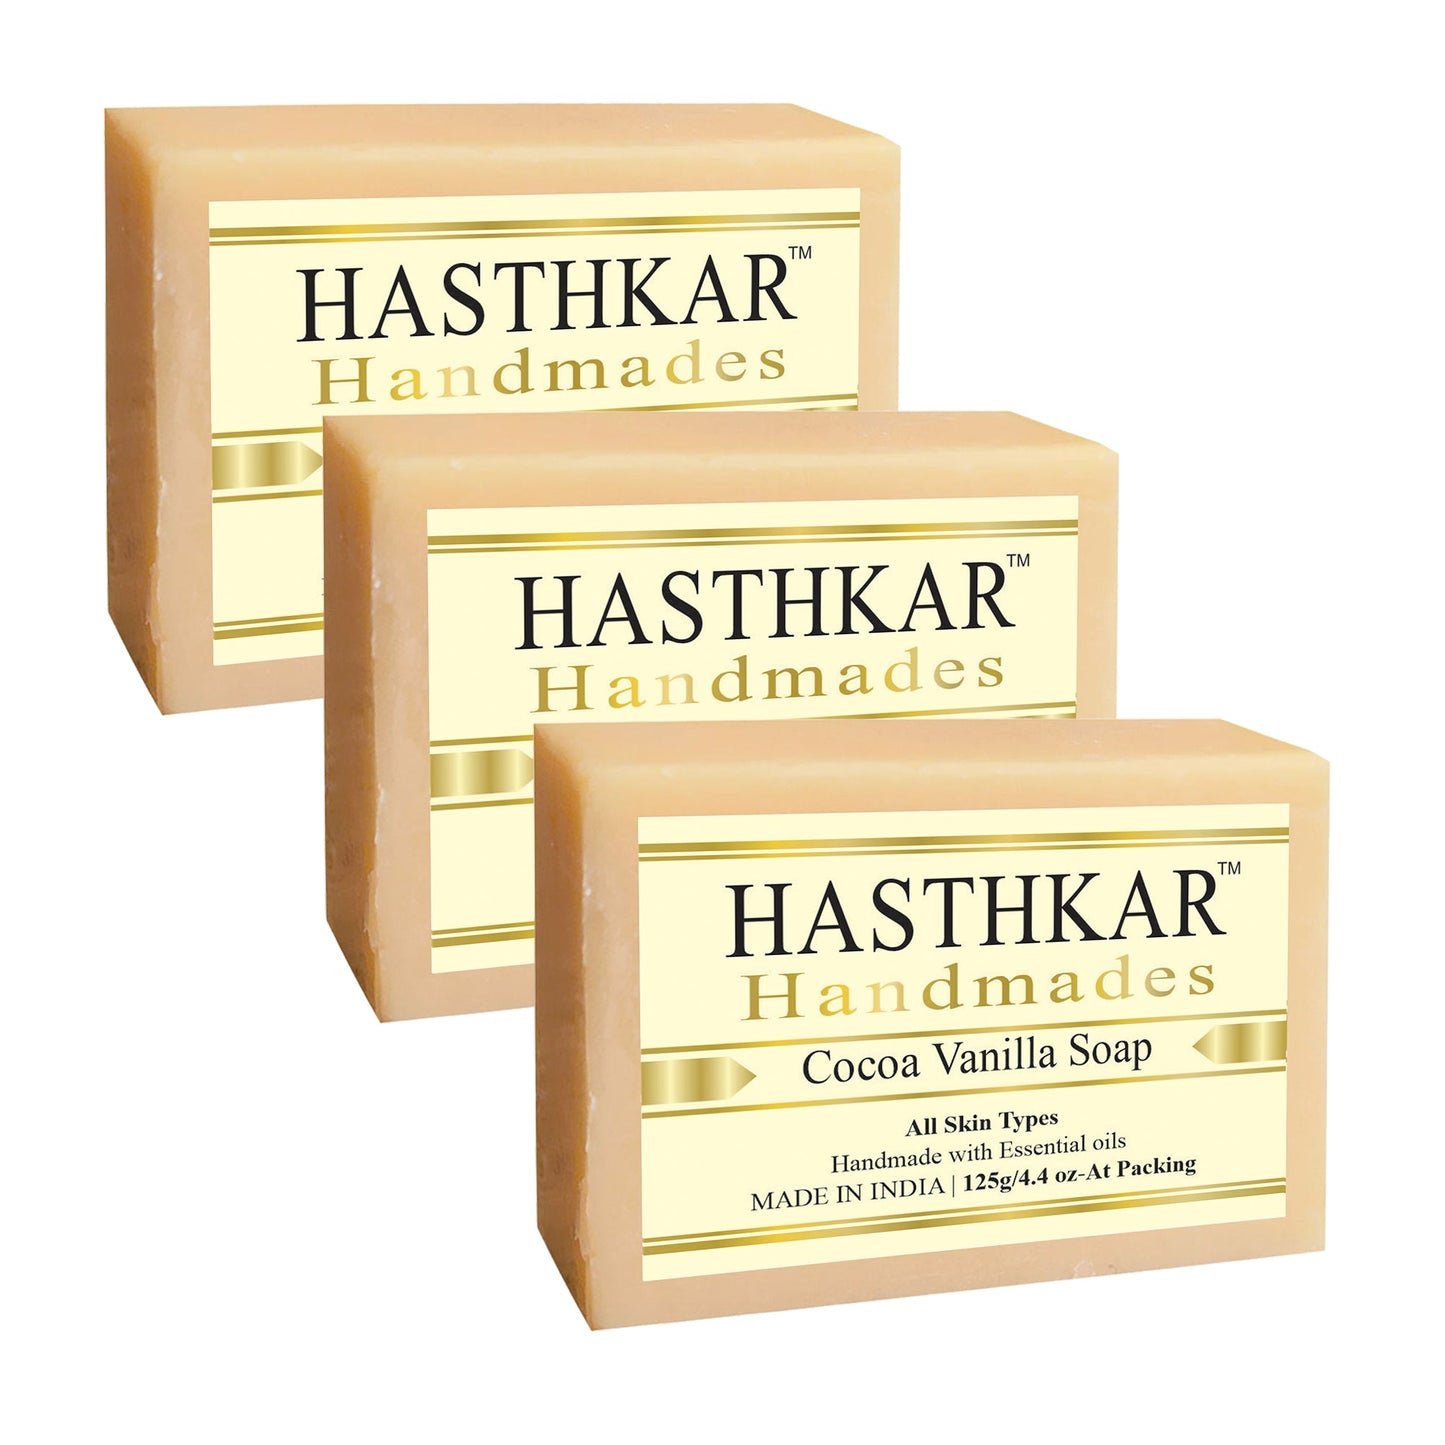 Hasthkar Handmades Glycerine Cocoa vanila Soap 125gm PACK OF 3